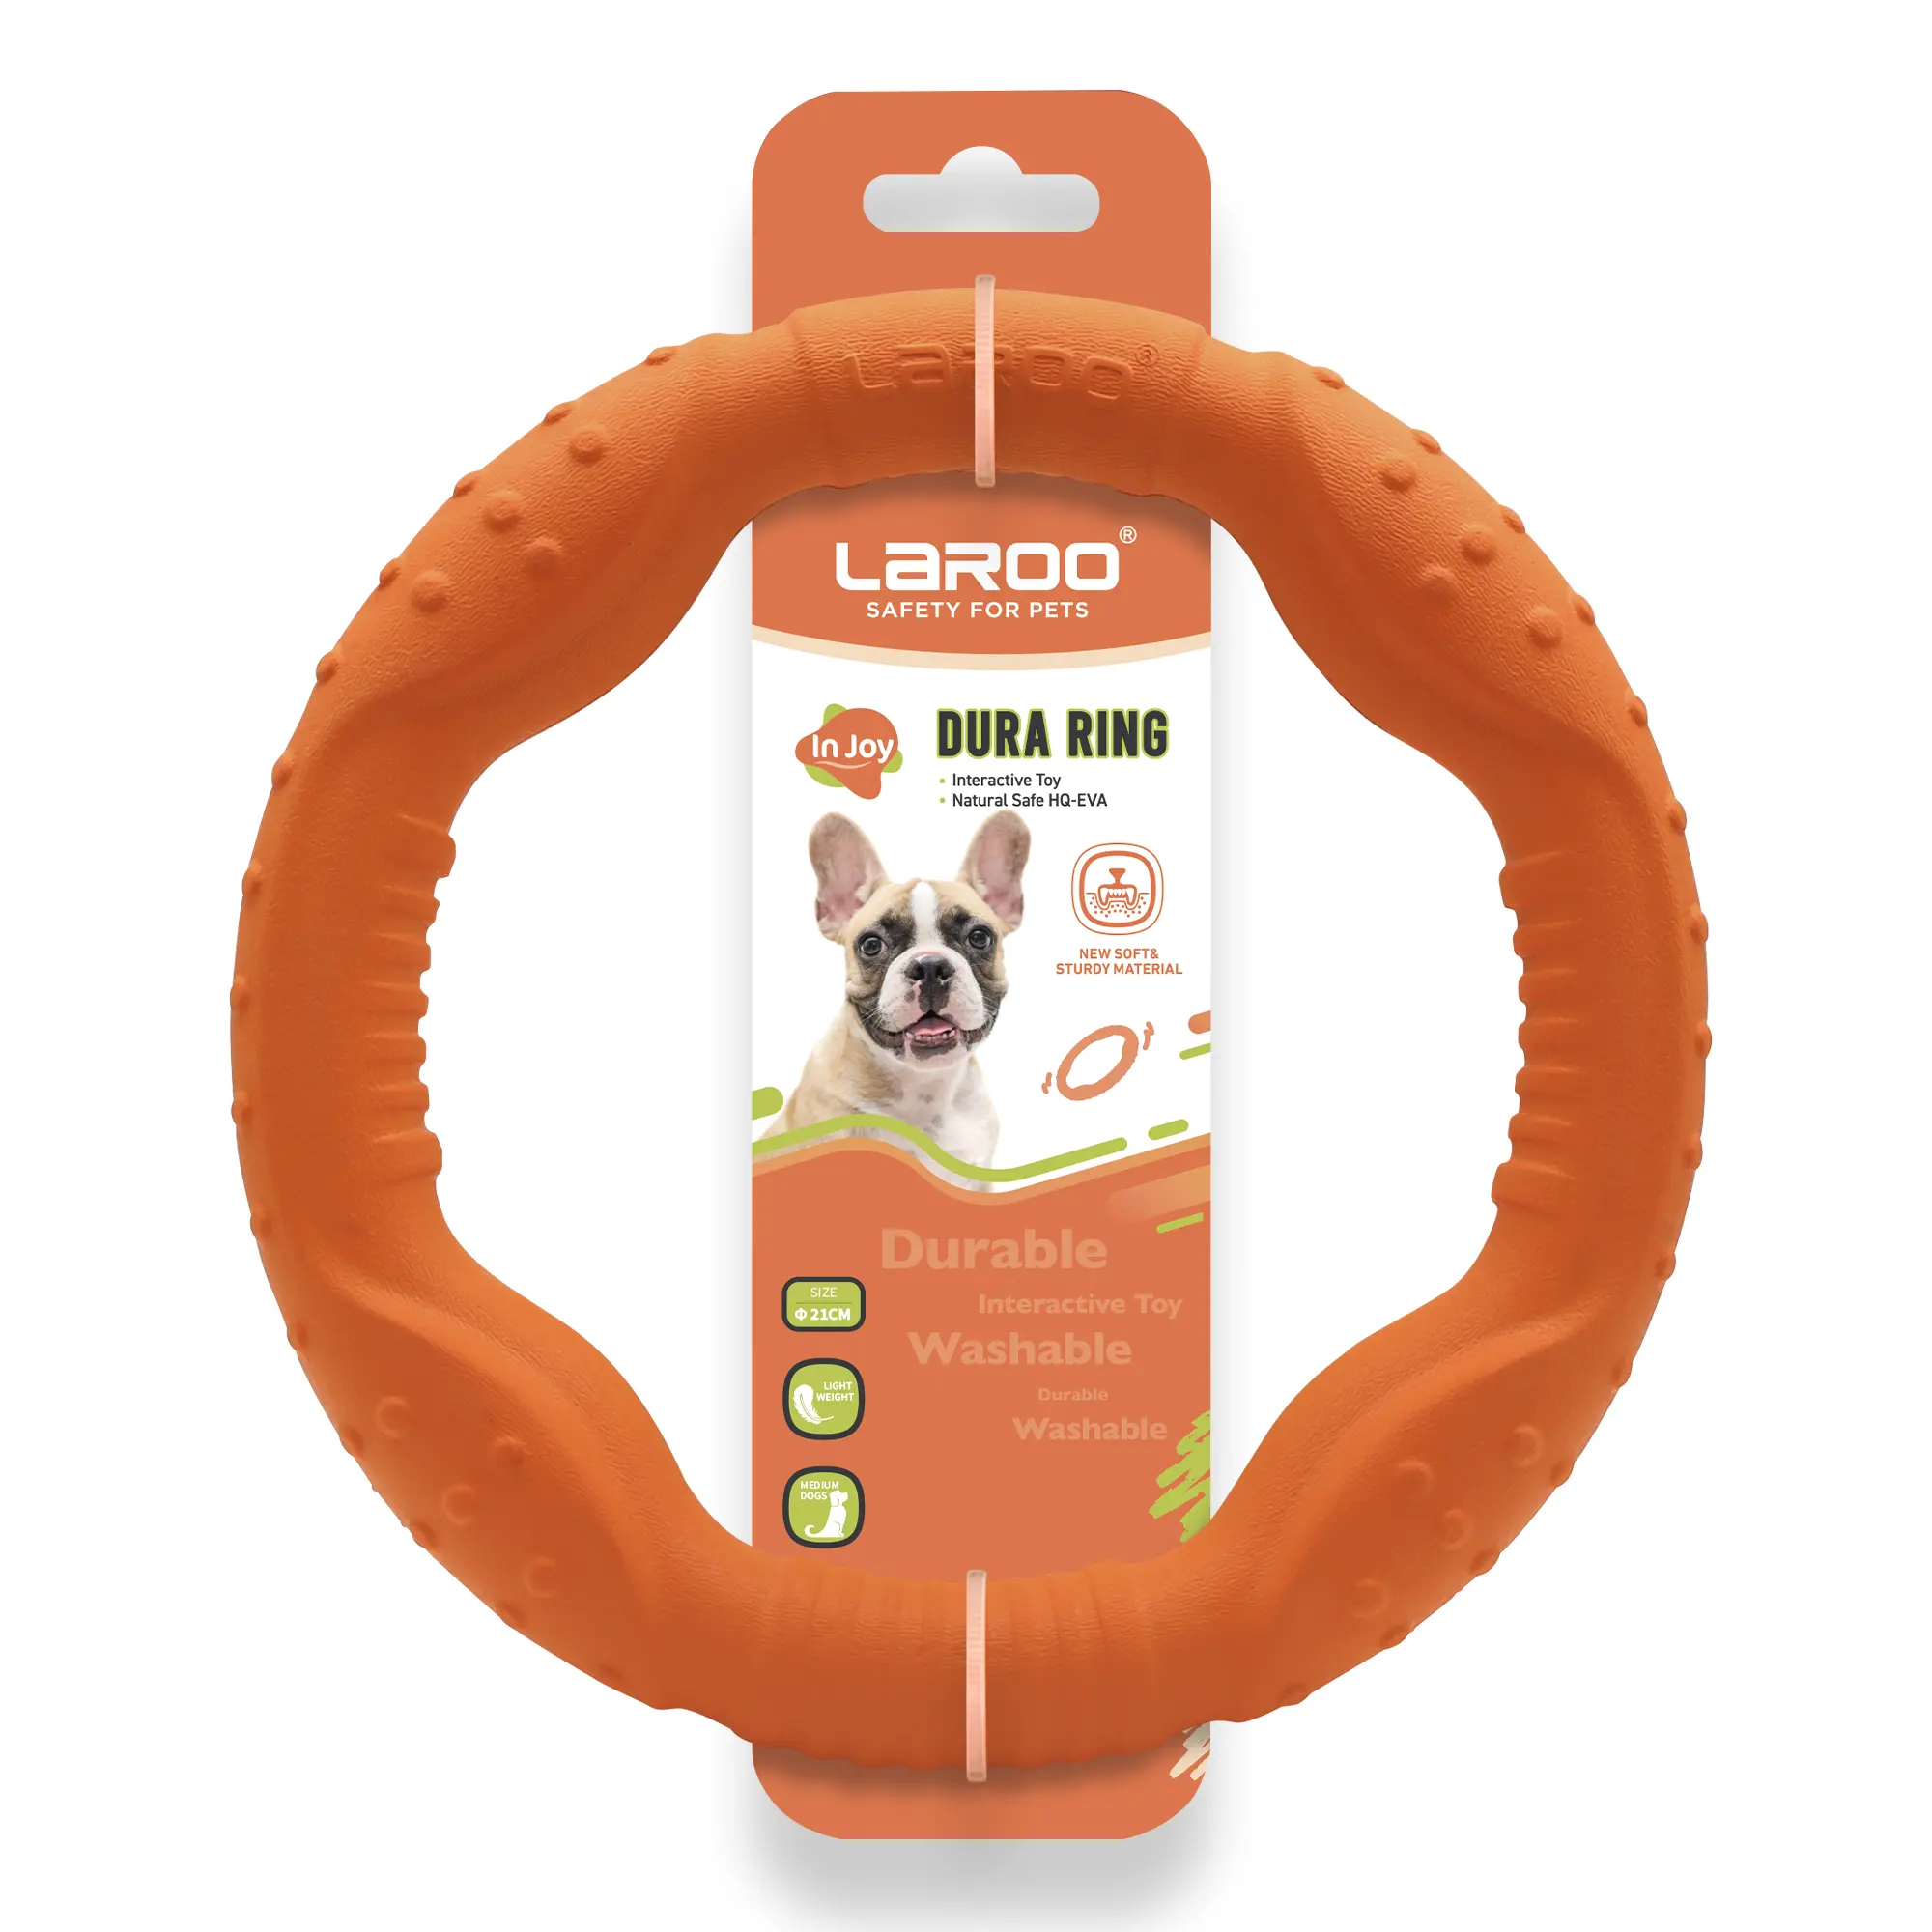 LaRoo EVA morsi-resistente molare di medie dimensioni cane giocattolo interattivo morso anello Pet giocattoli per l'addestramento del cane